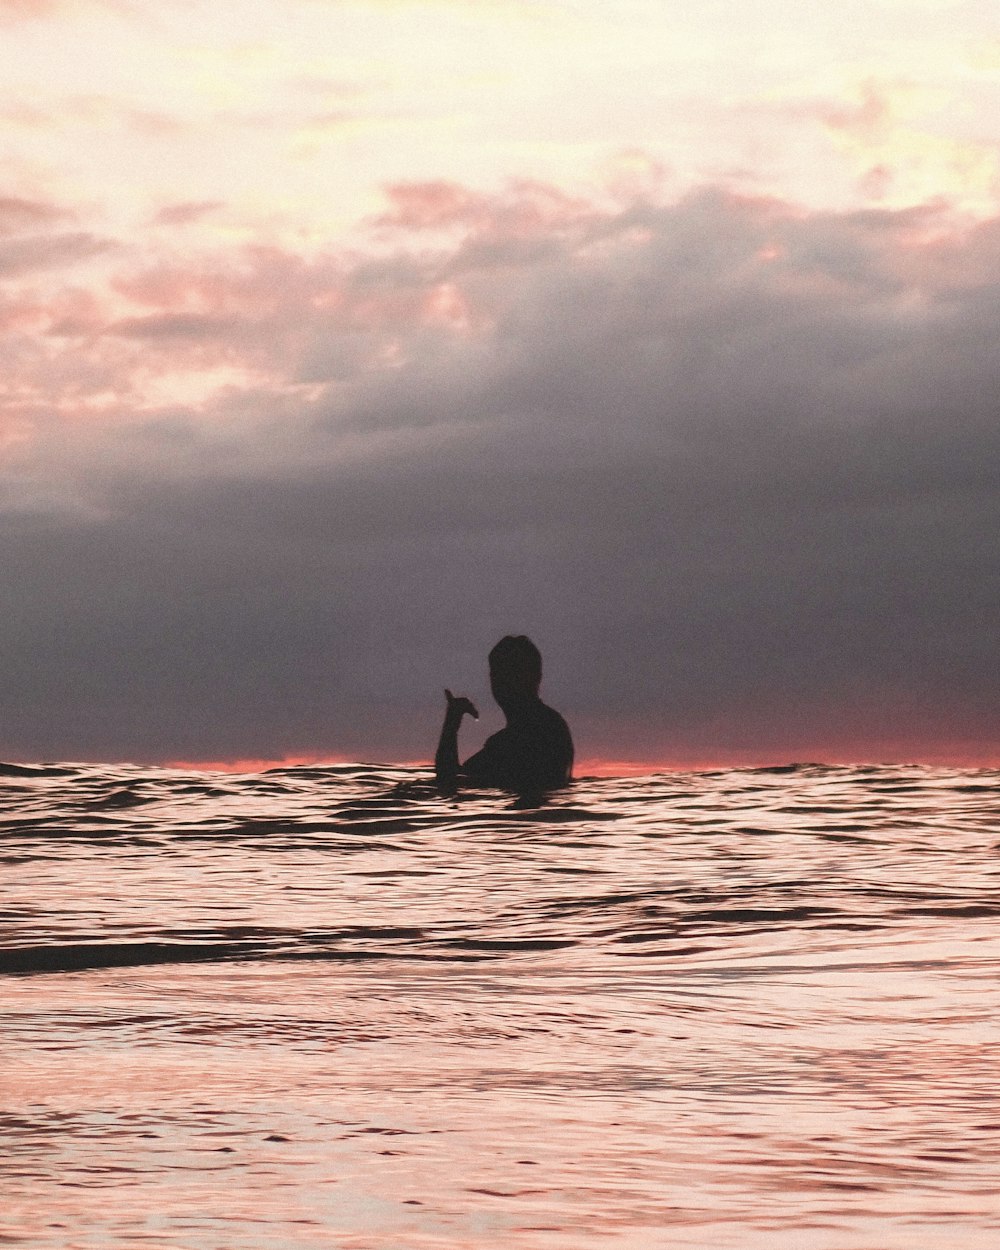 Silueta del hombre surfeando en el mar durante la puesta del sol